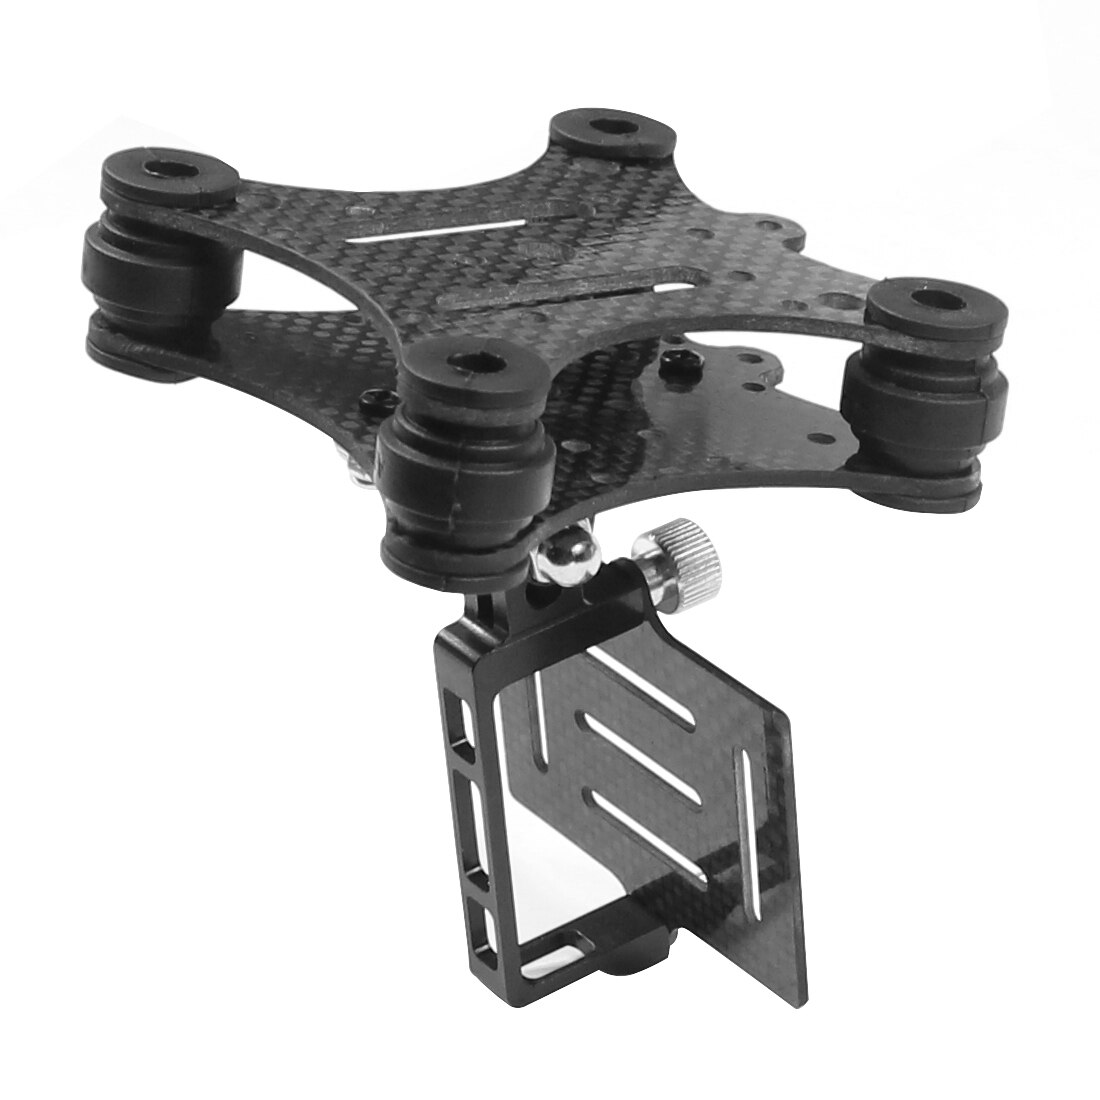 Kulfiber kamera gimbal mount fpv stødsikker dæmpning ptz til dji phantom drone quadcopter multicopter til gopro hero 3 3+ 4